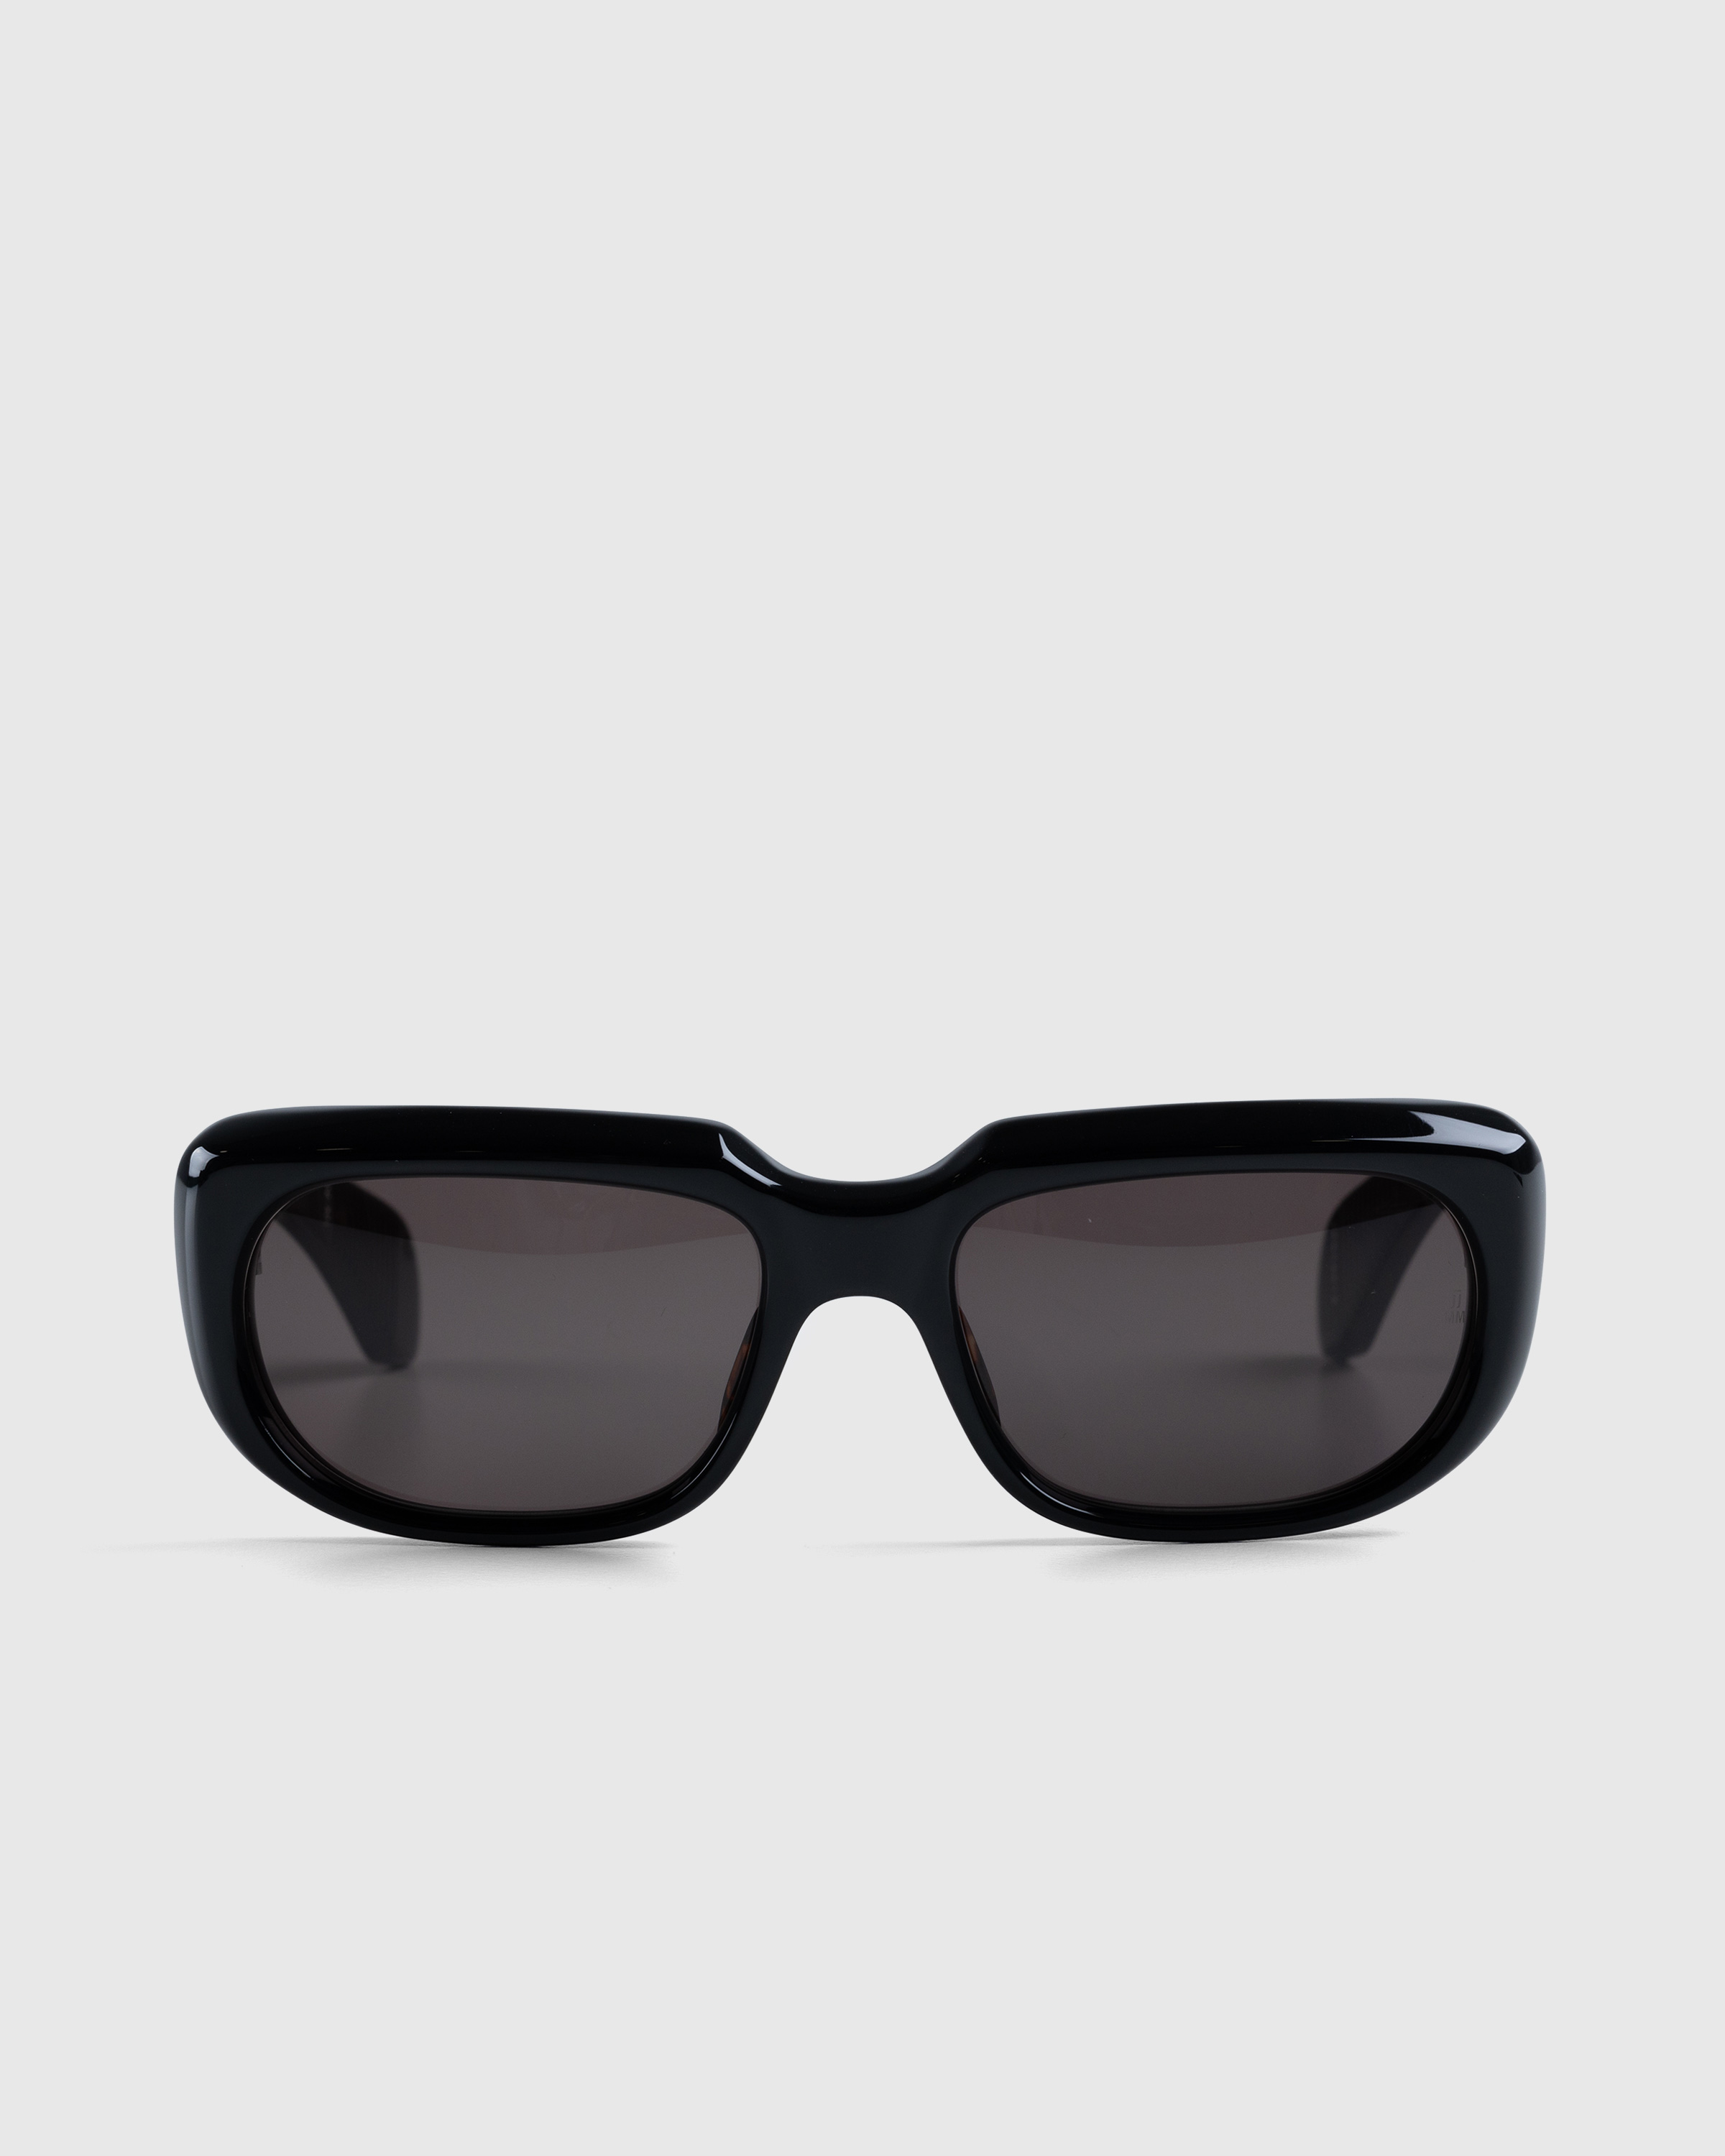 Jacques Marie Mage – Sartet Noir - Sunglasses - Black - Image 1